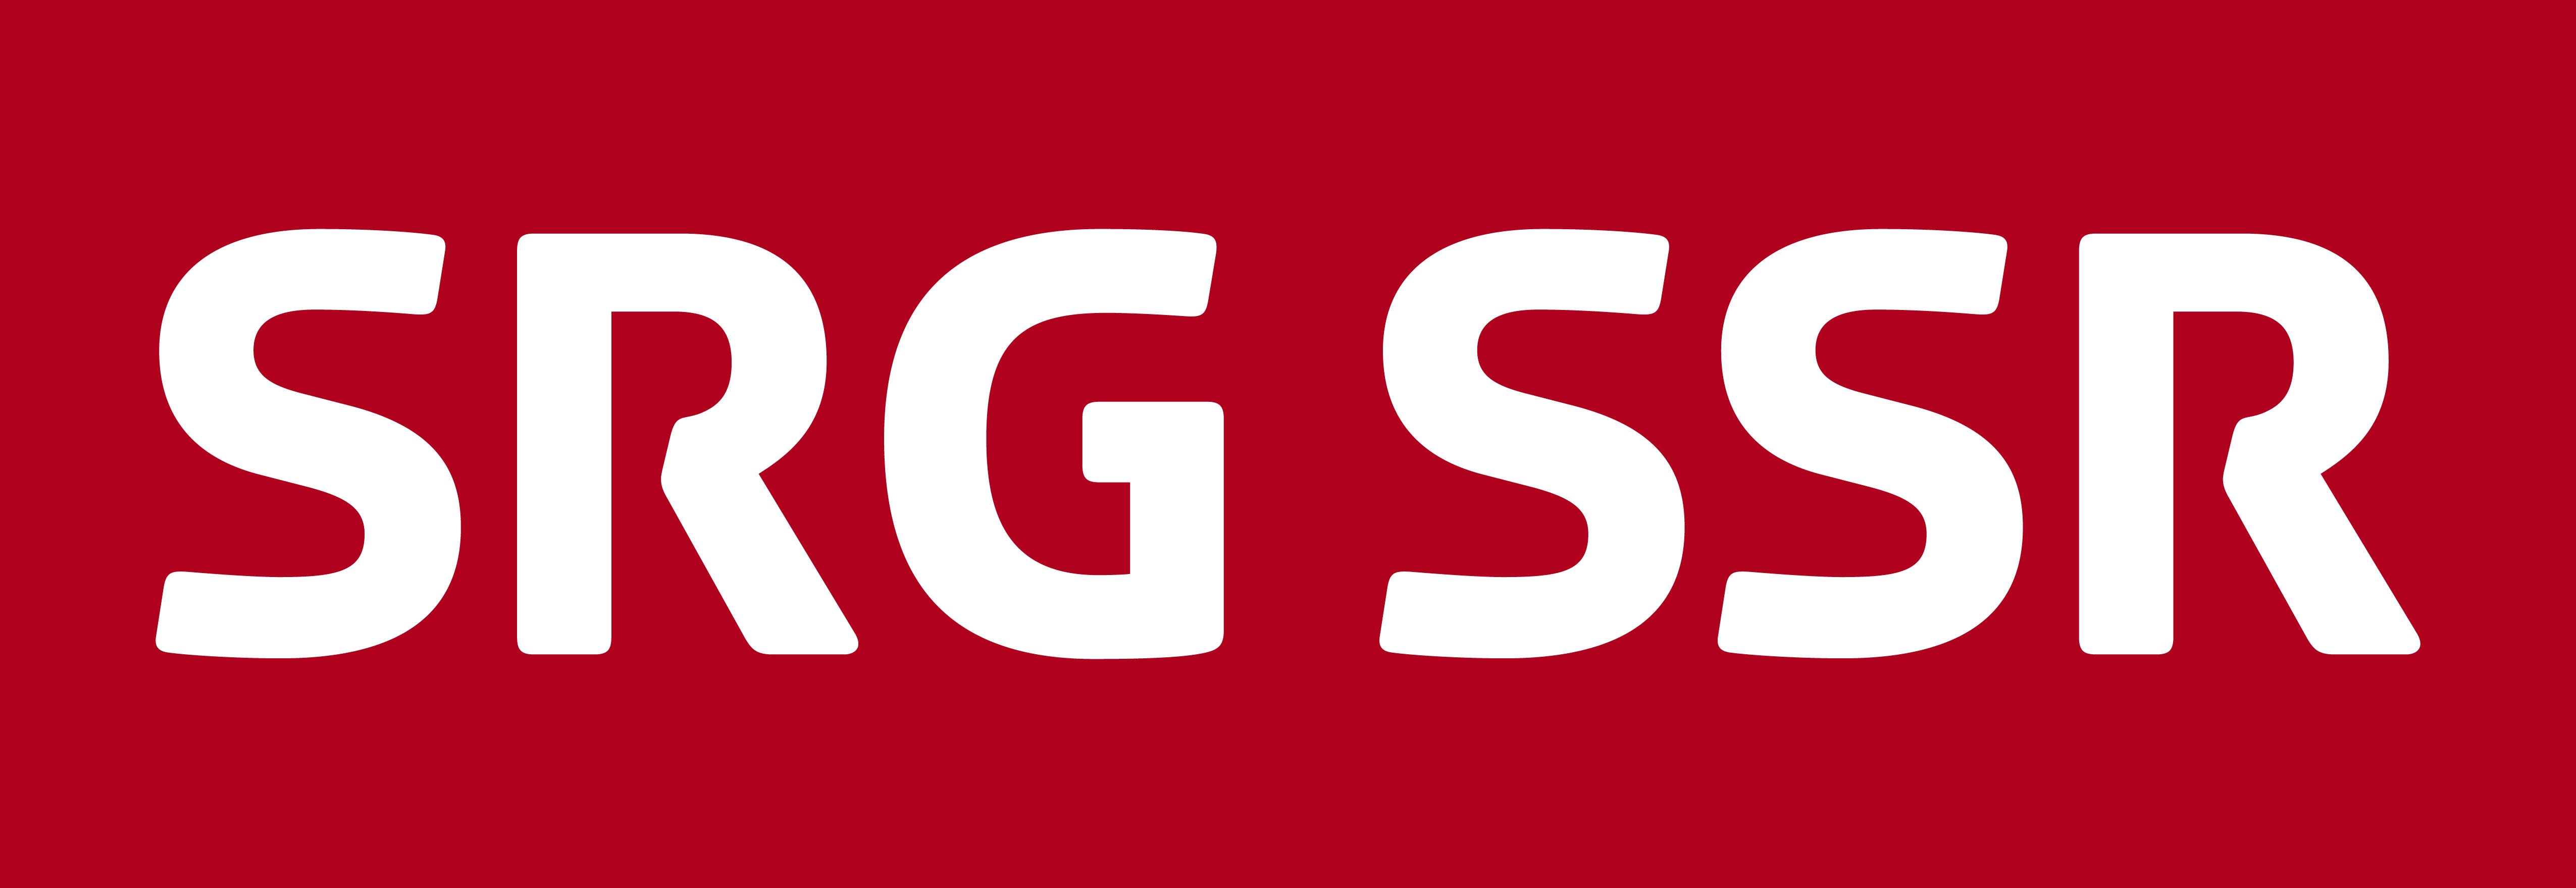 Logo SRG SSR